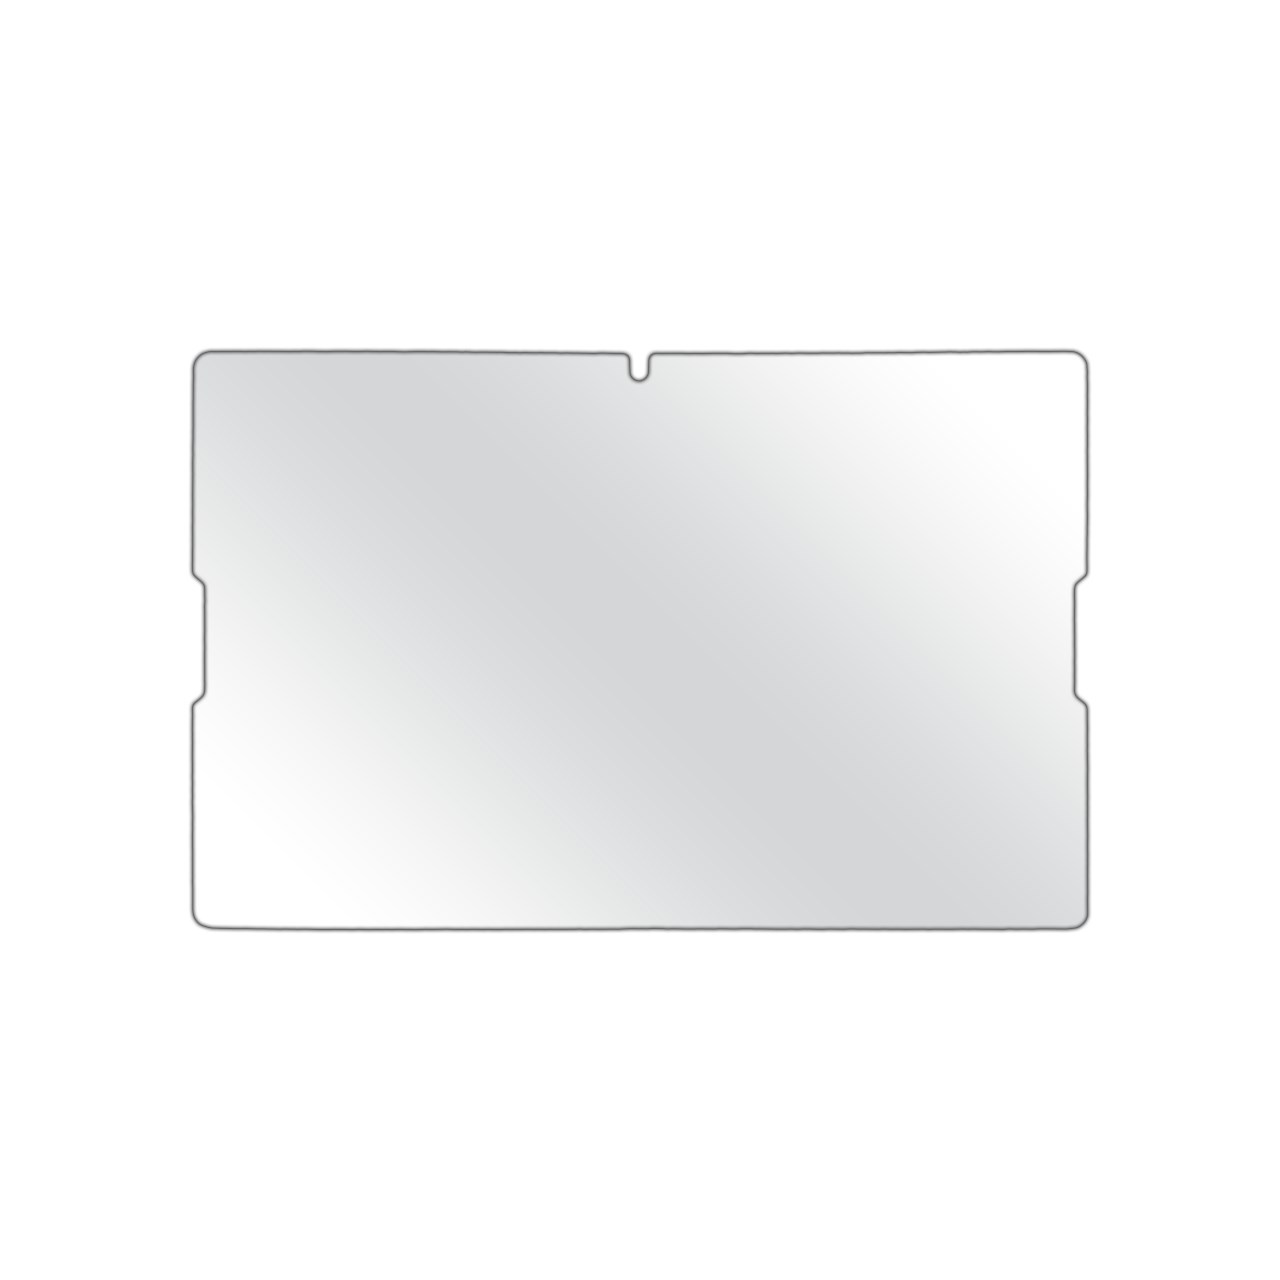 محافظ صفحه نمایش مولتی نانو مناسب برای تبلت لنوو ای 7600 / ای 10